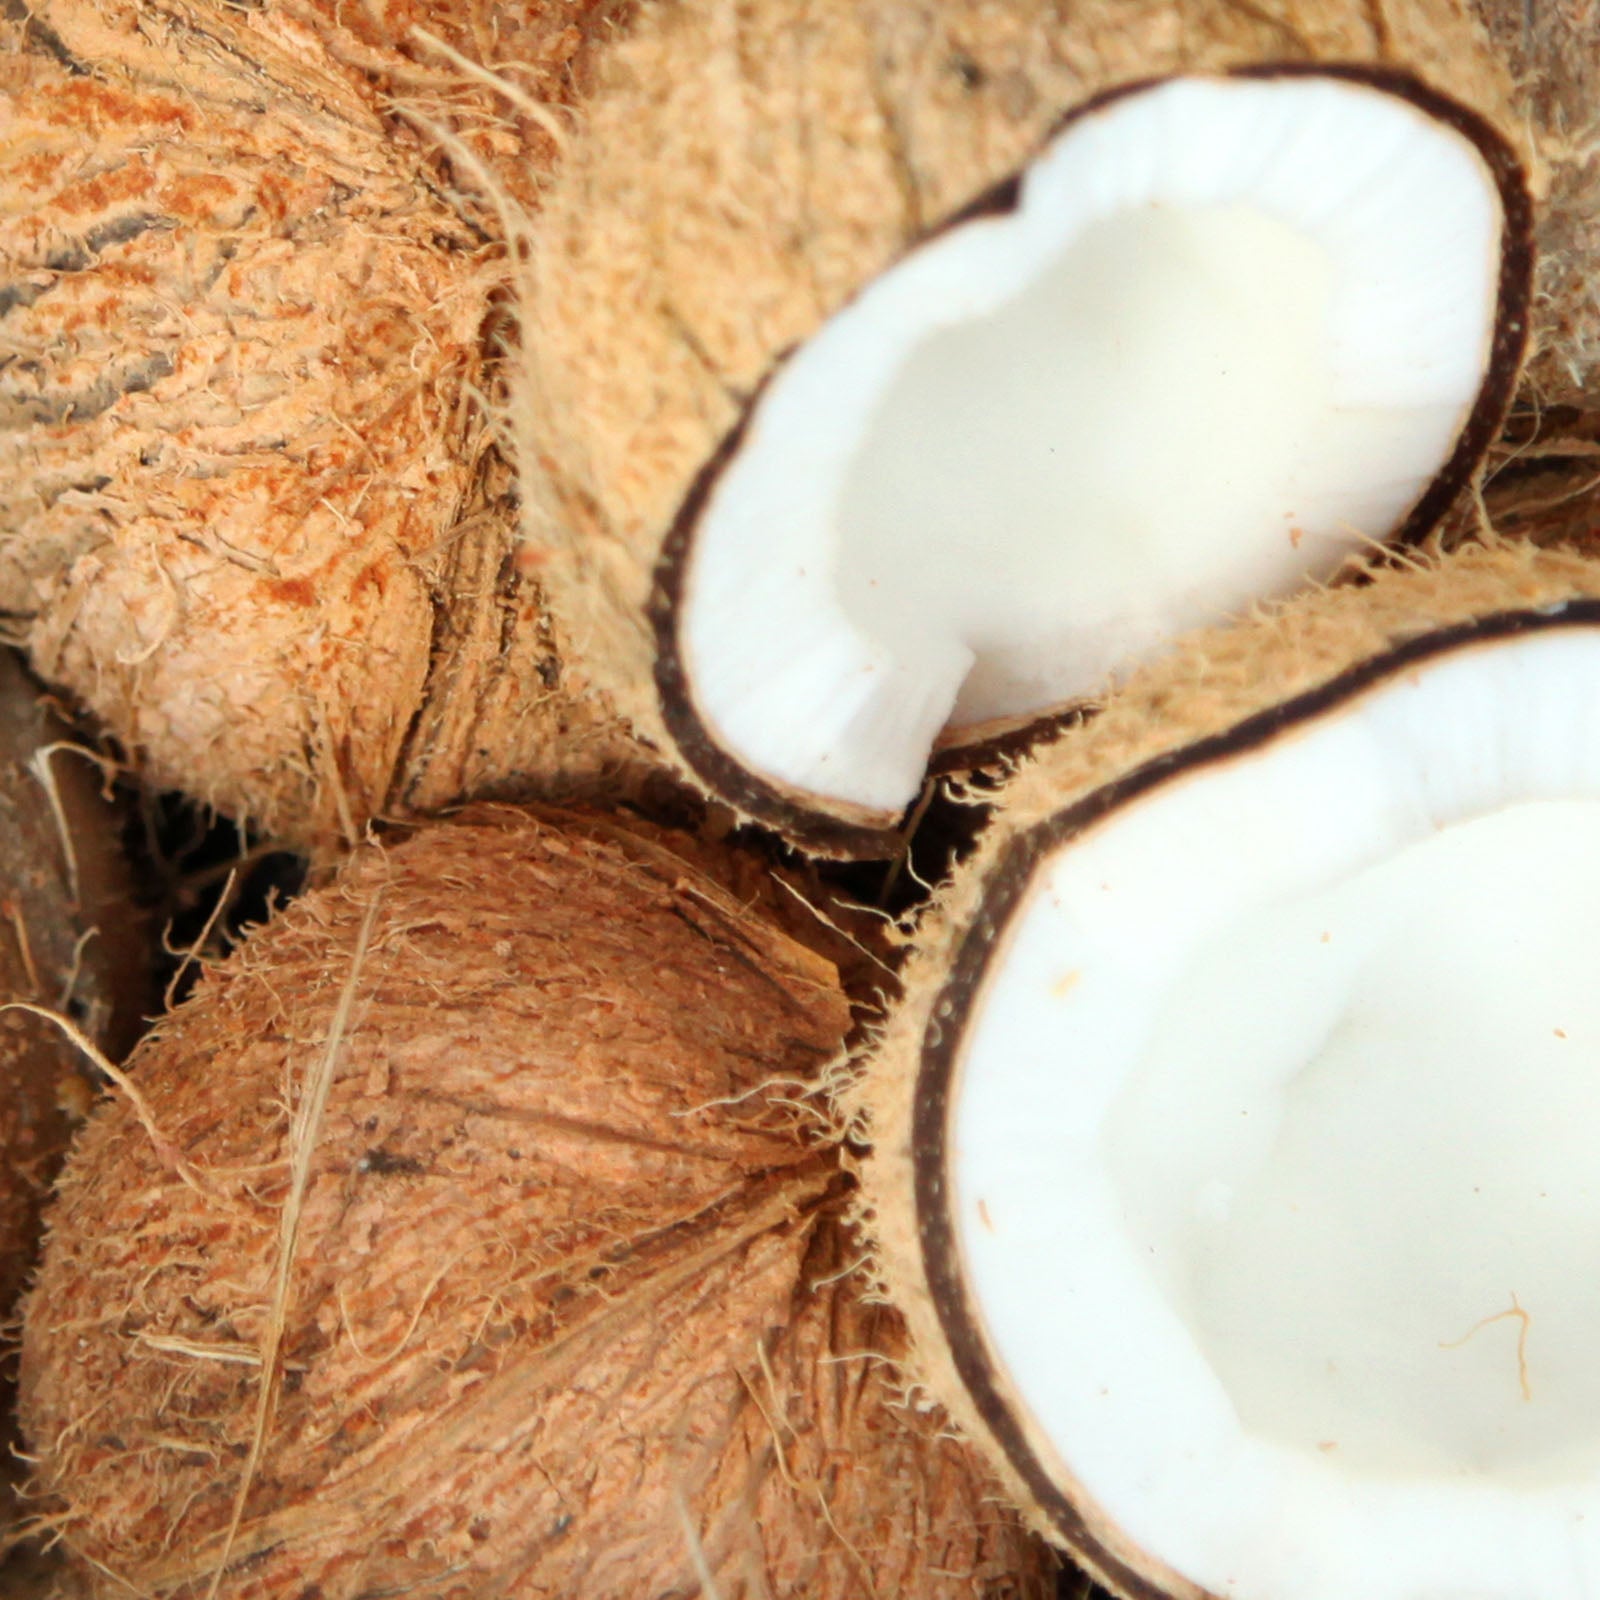 Cocos nucifera (coconut) oil